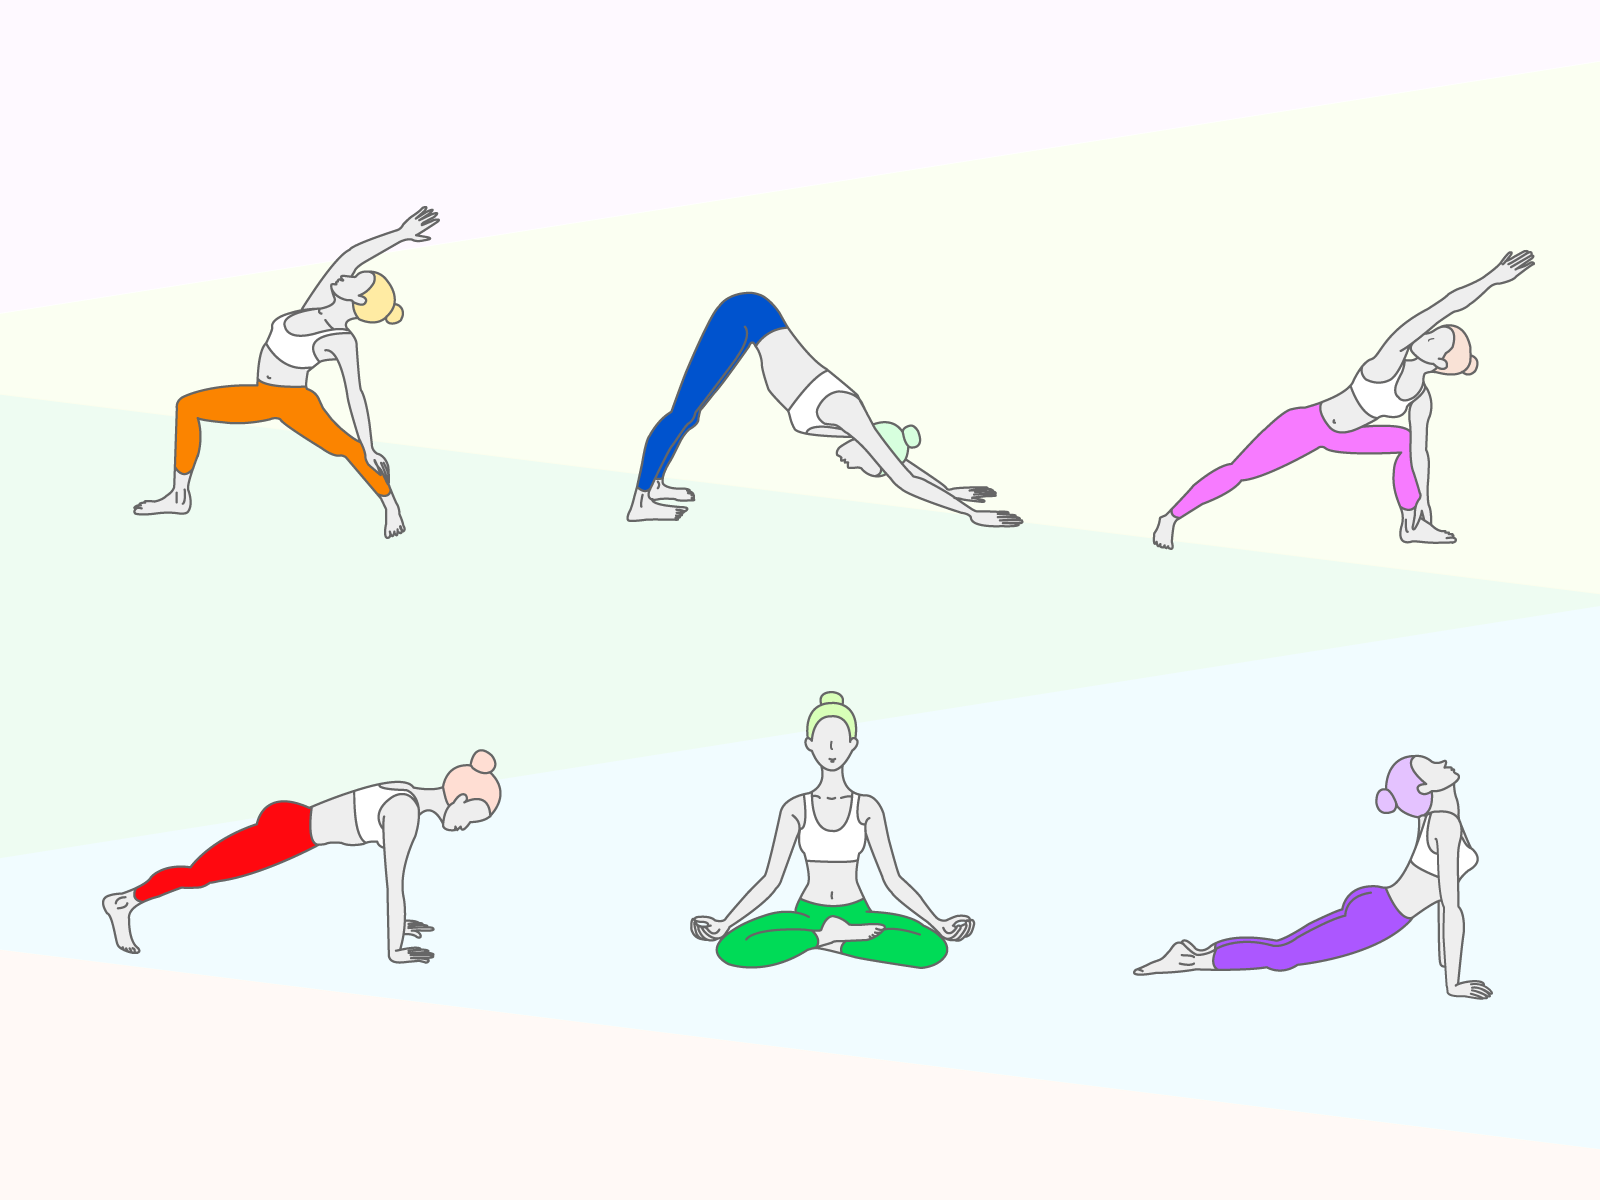 Yoga icons